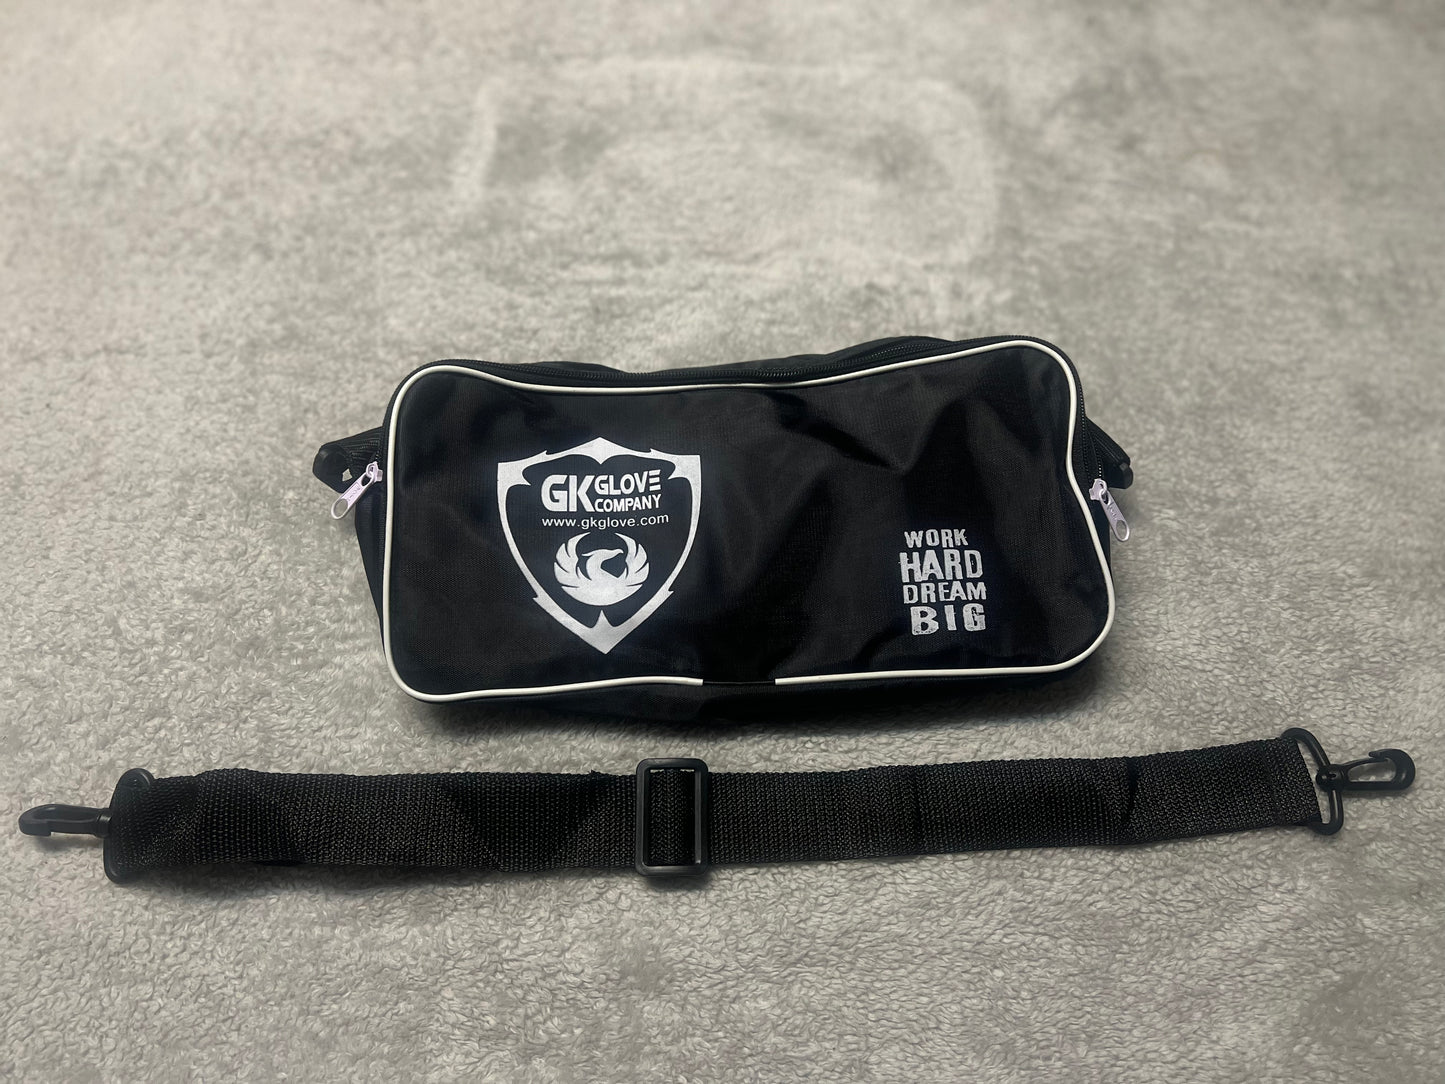 GK Glove Company Shield- Glove Bag